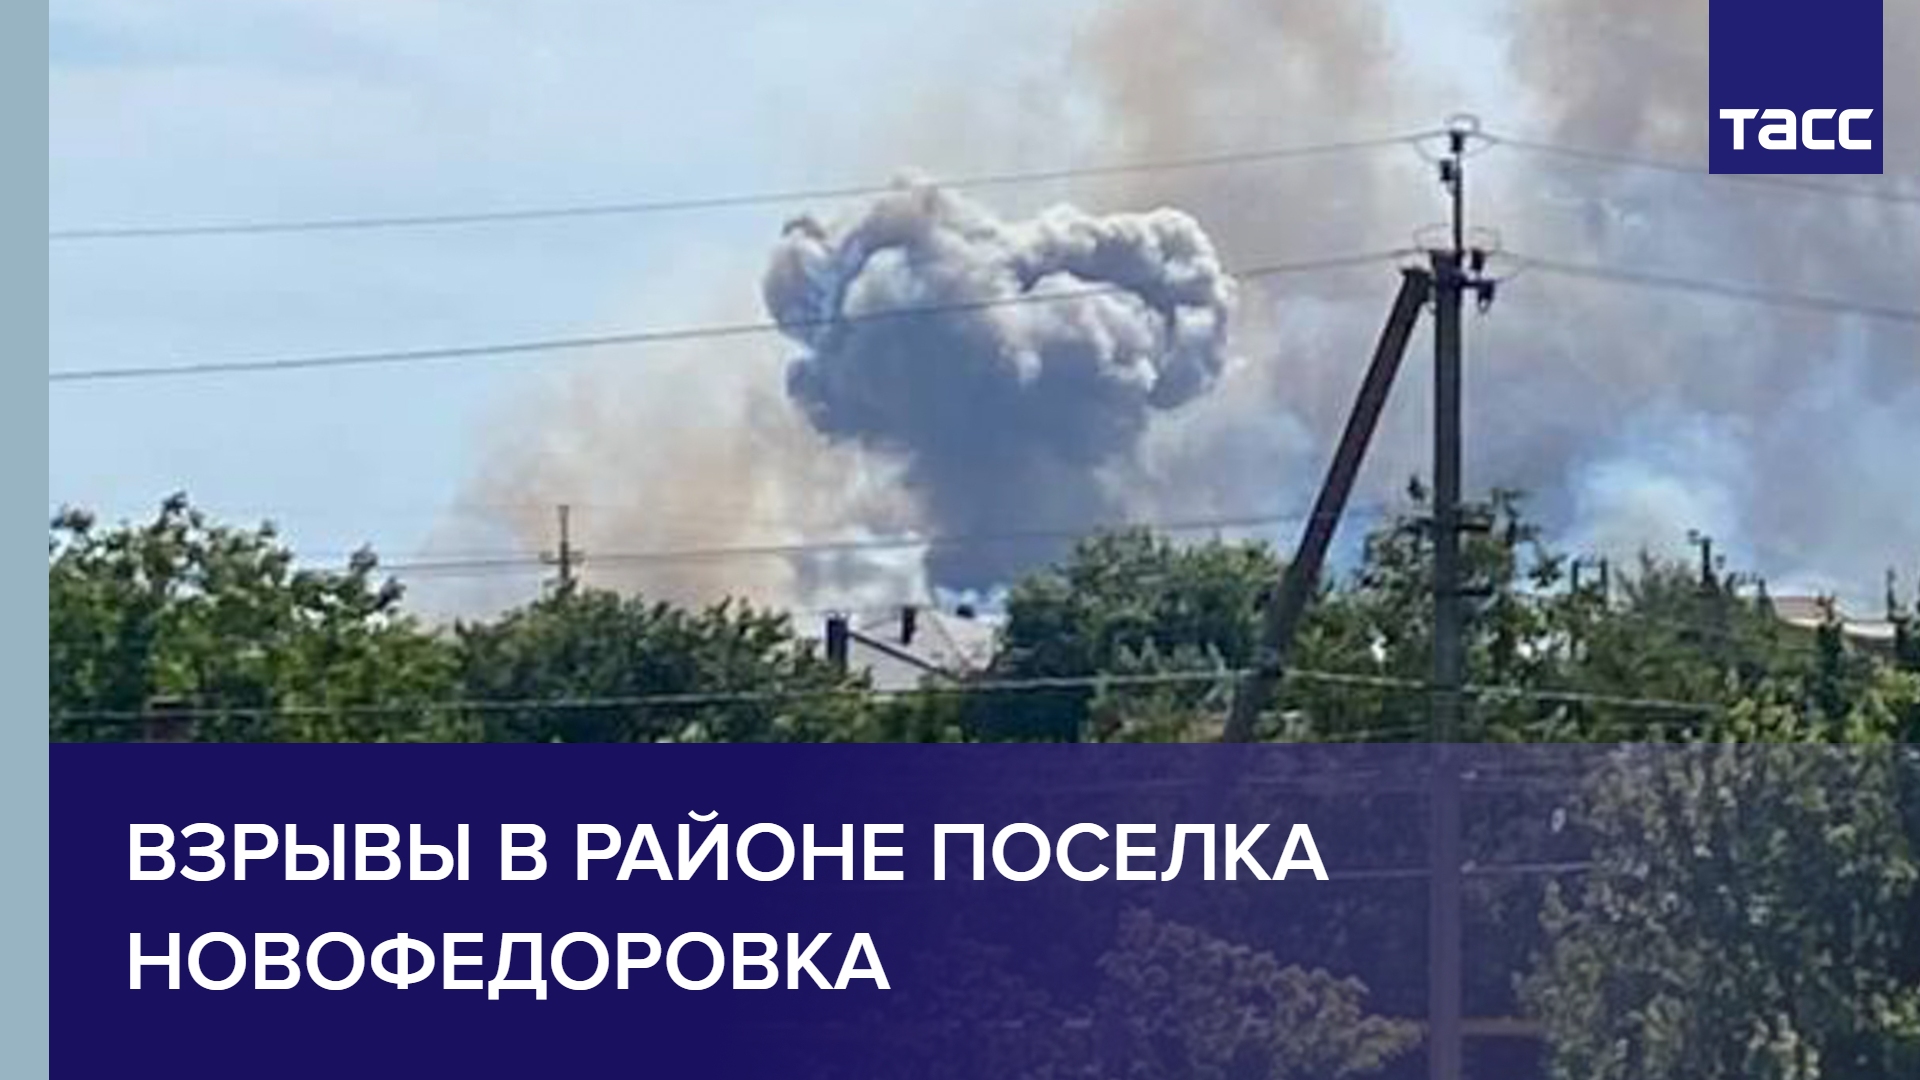 Взрывы в районе поселка Новофедоровка #shorts